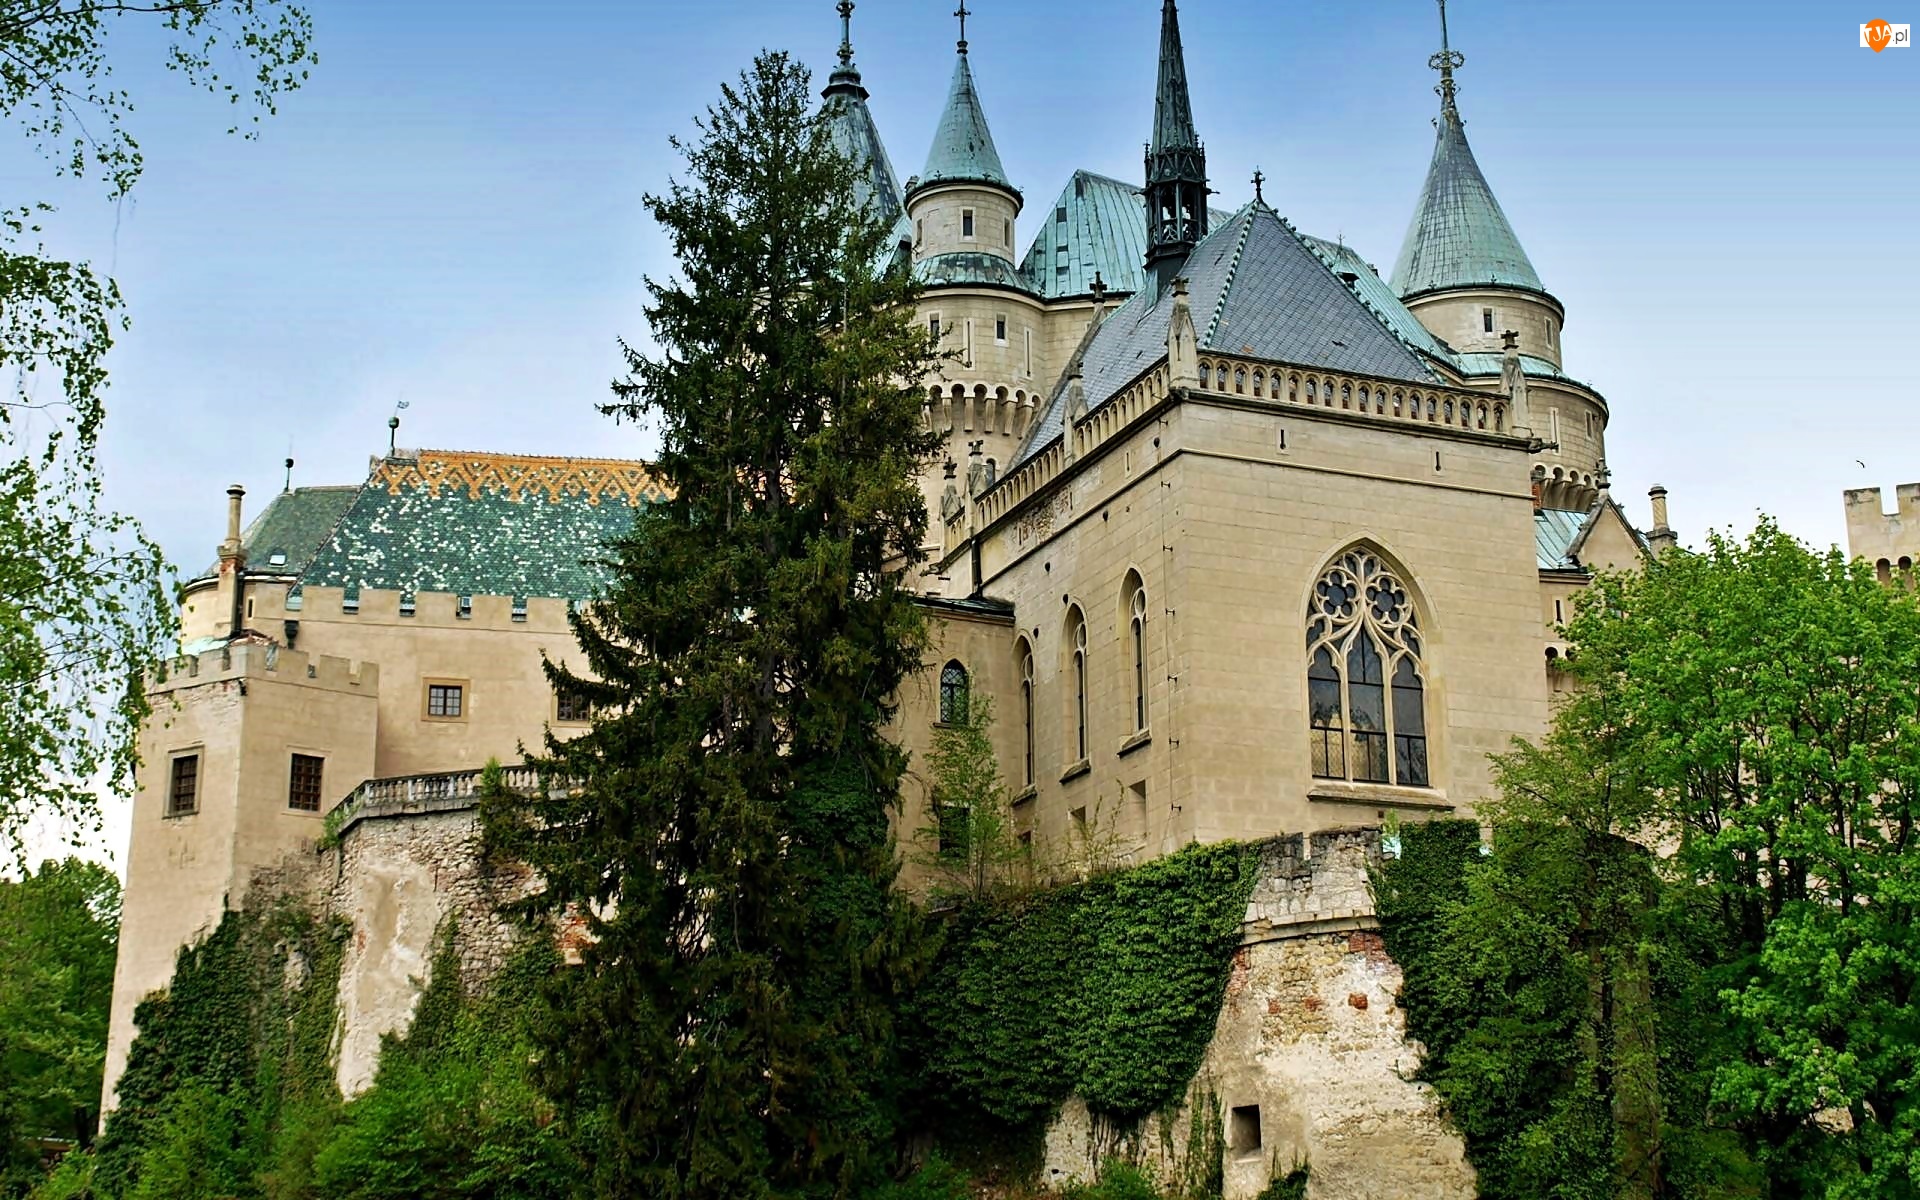 Zamek w Bojnicach, Słowacja, Bojnický zámok, Bojnice